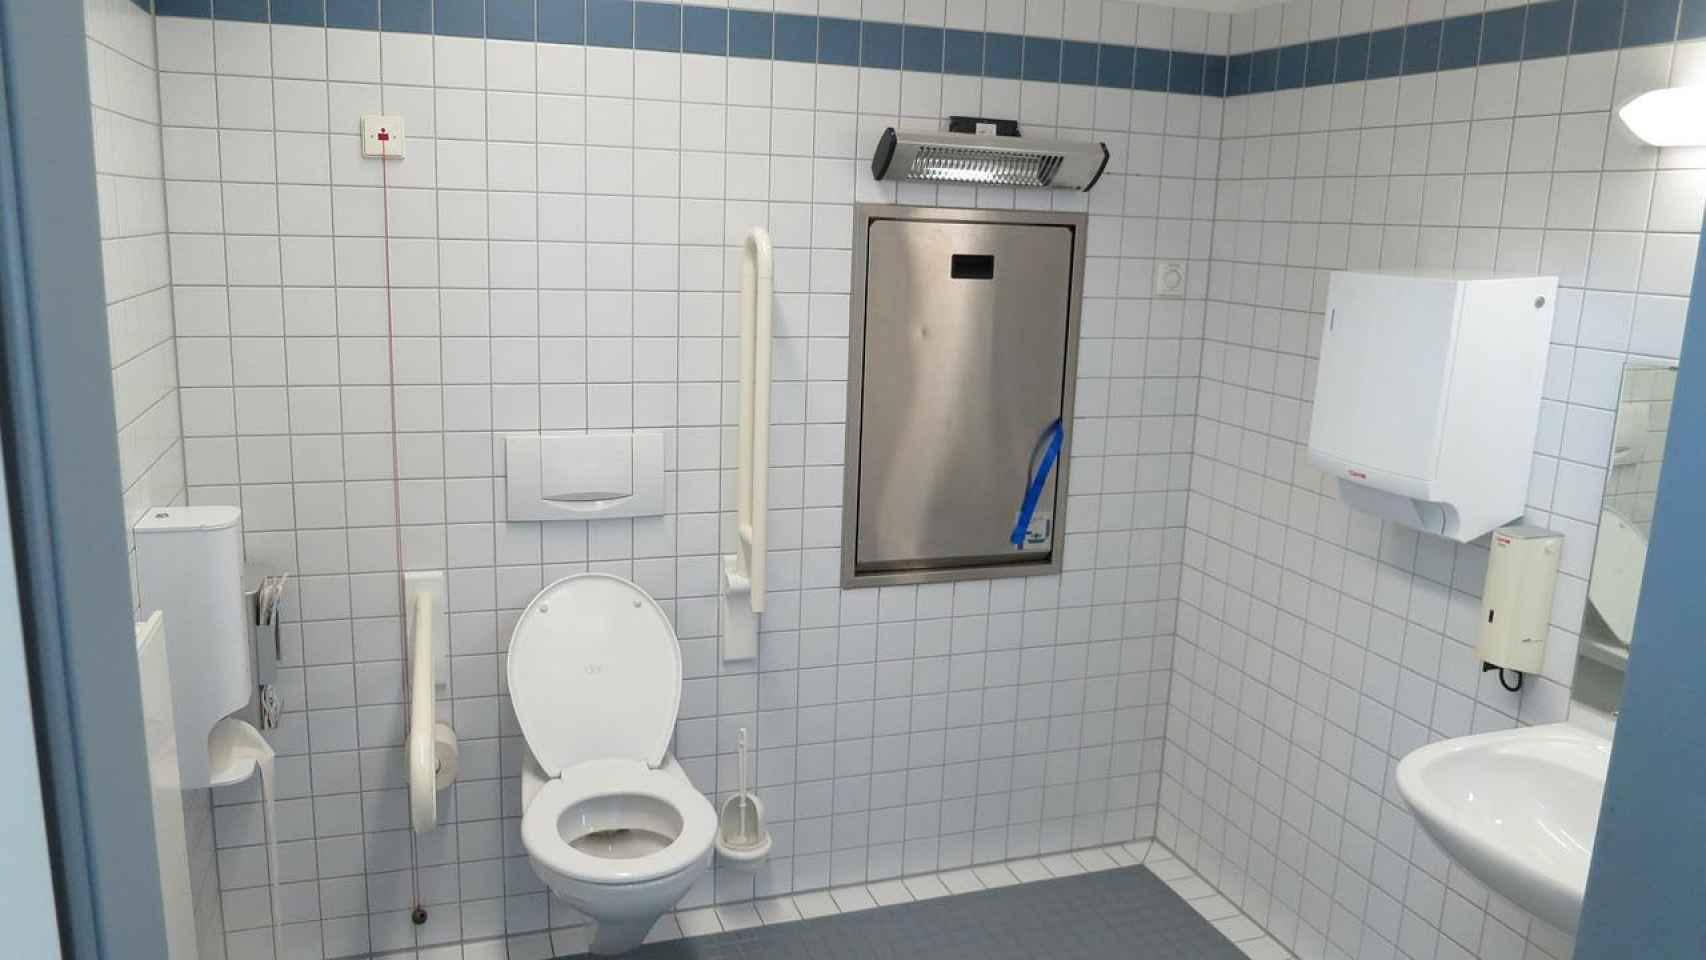 Un lavabo con una taza de váter, lugar donde orinar (mear) / PIXABAY